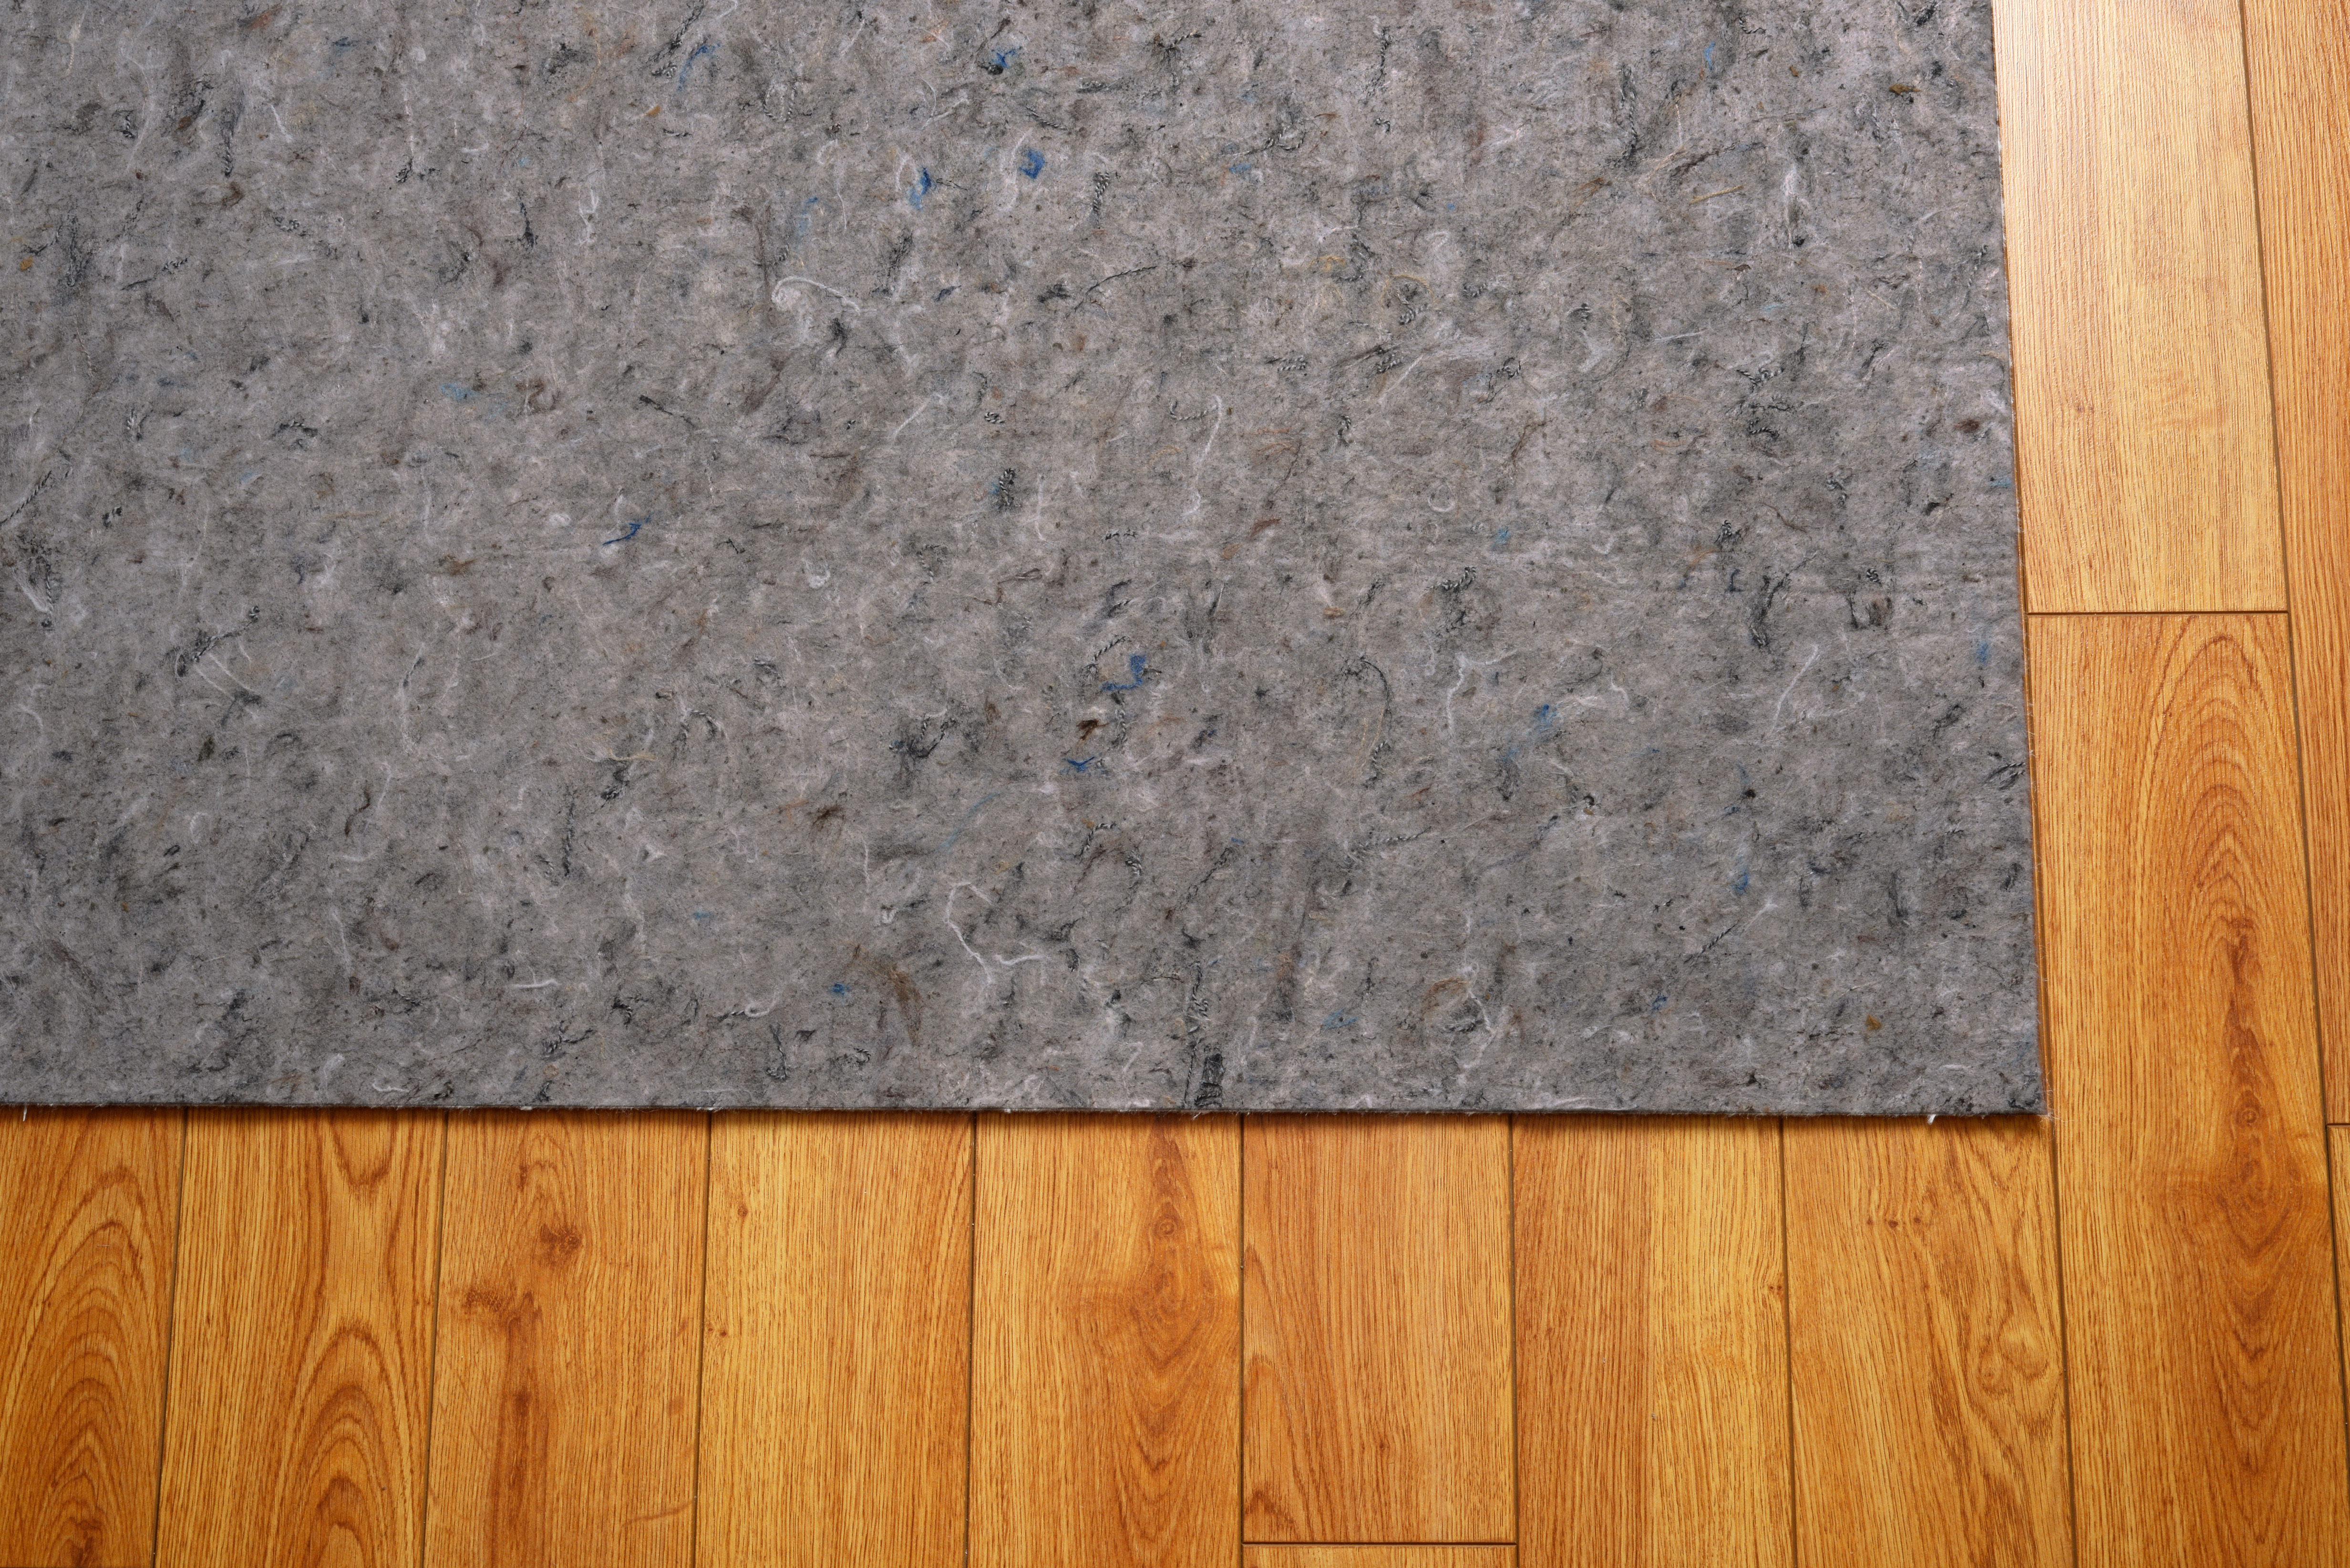 Area rug felt under pad on hardwood floor | Corvin's Floors & Cabinets